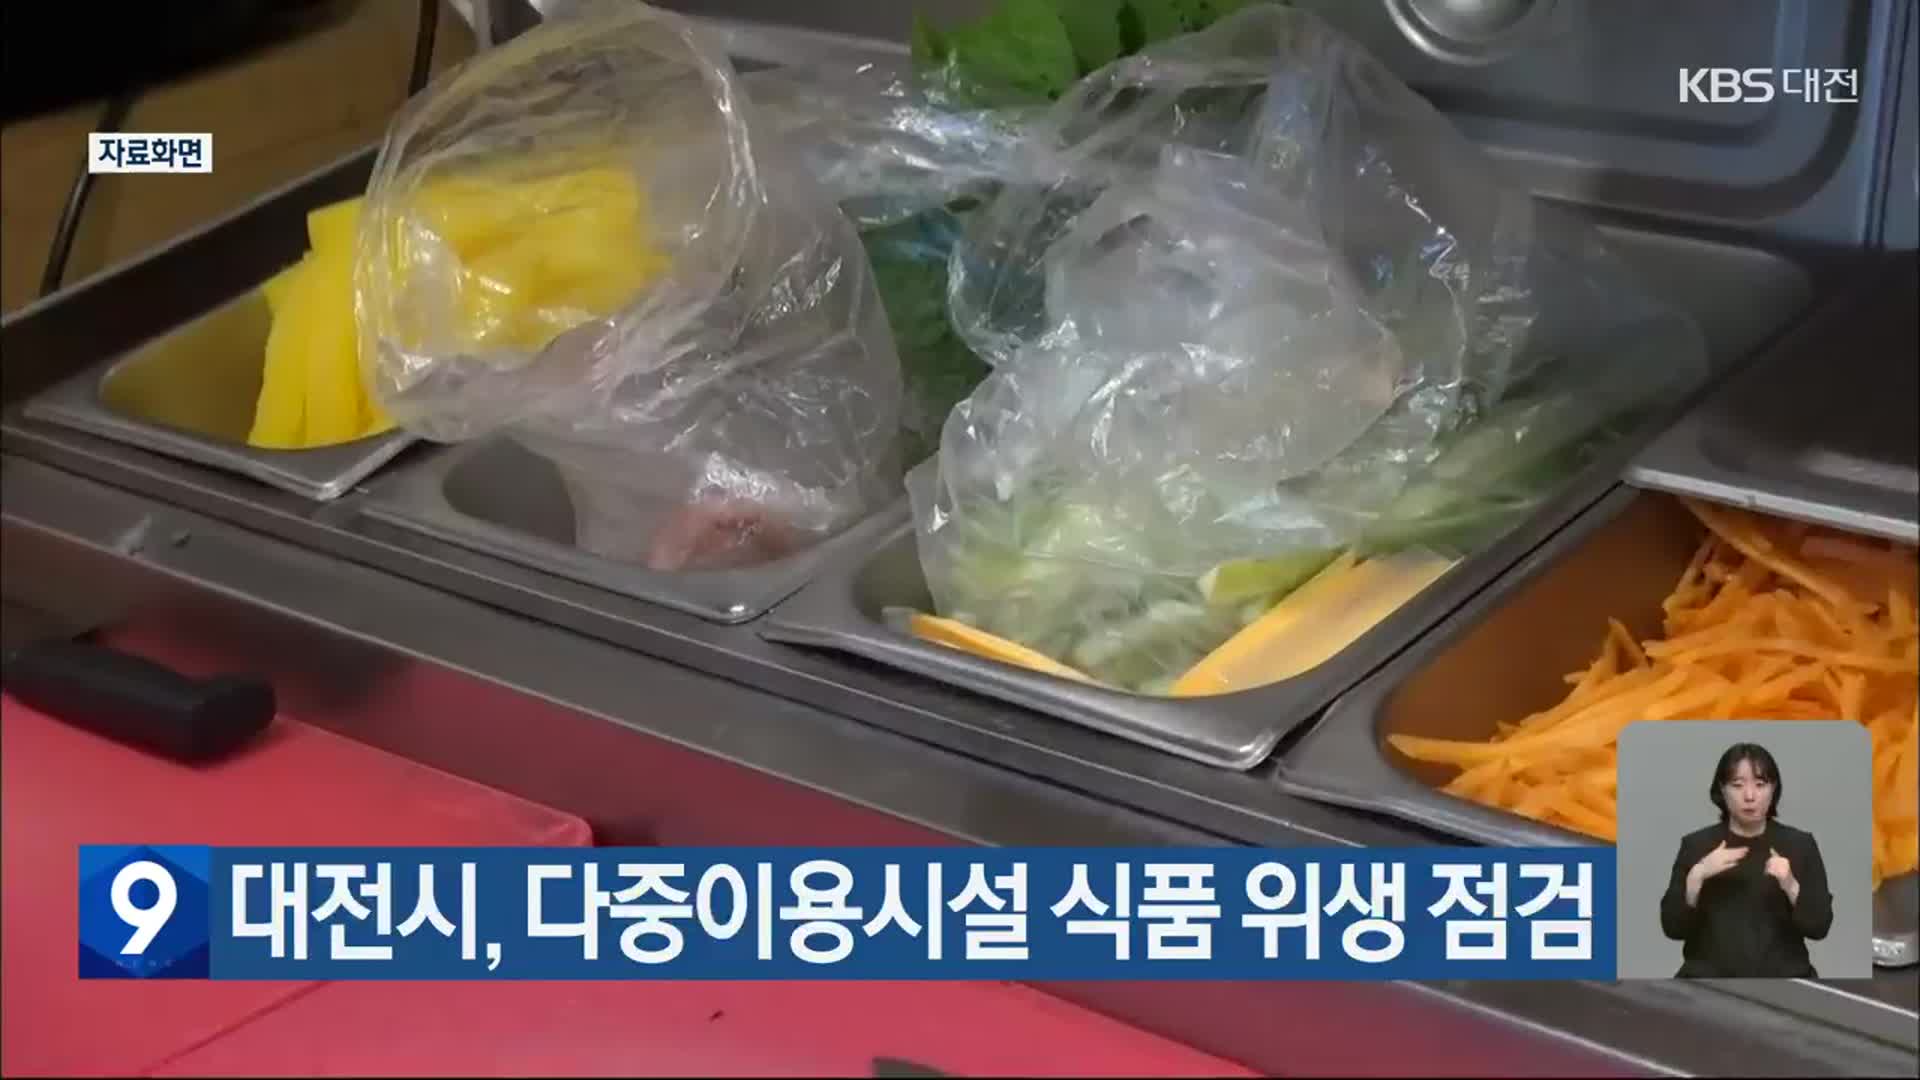 대전시, 다중이용시설 식품 위생 점검